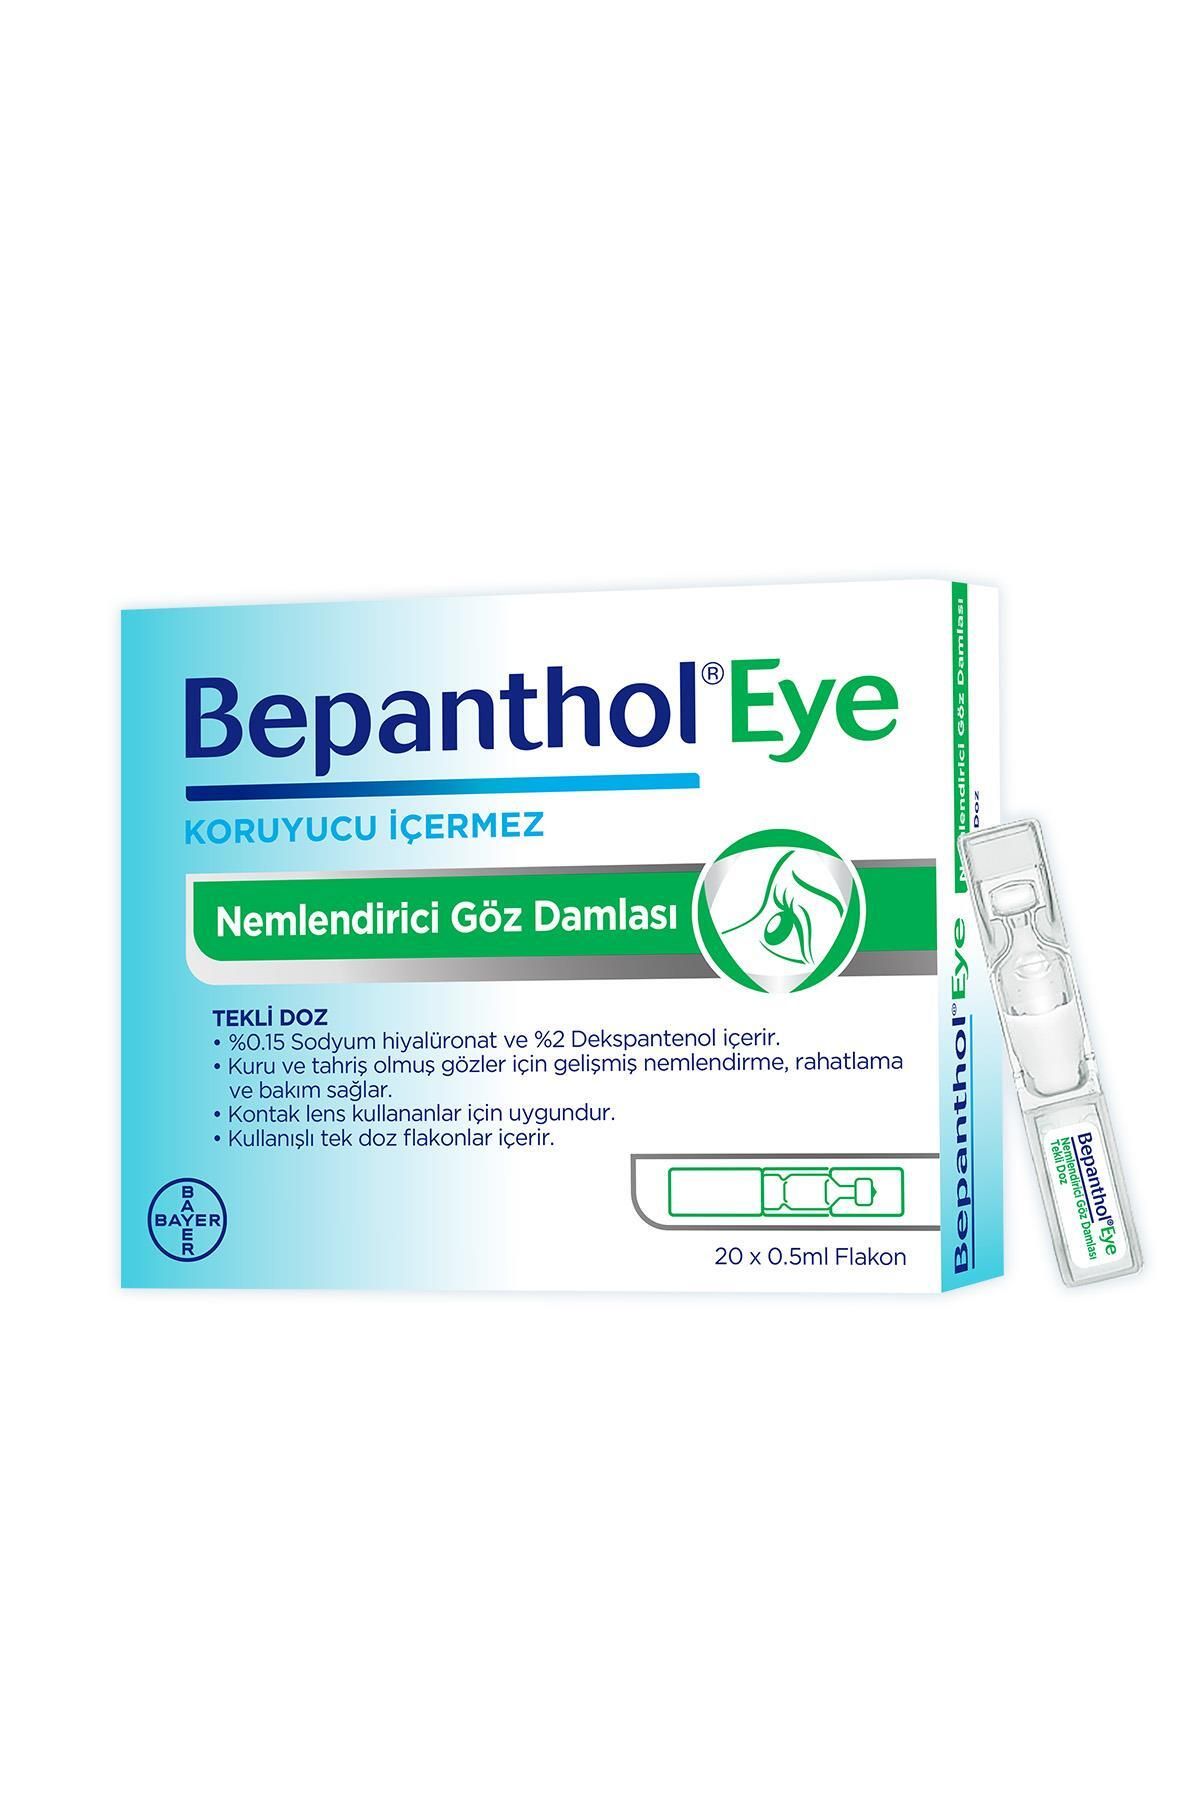 Bepanthol Eye Nemlendirici Göz Damlası Tekli Doz 20x0.5ml.